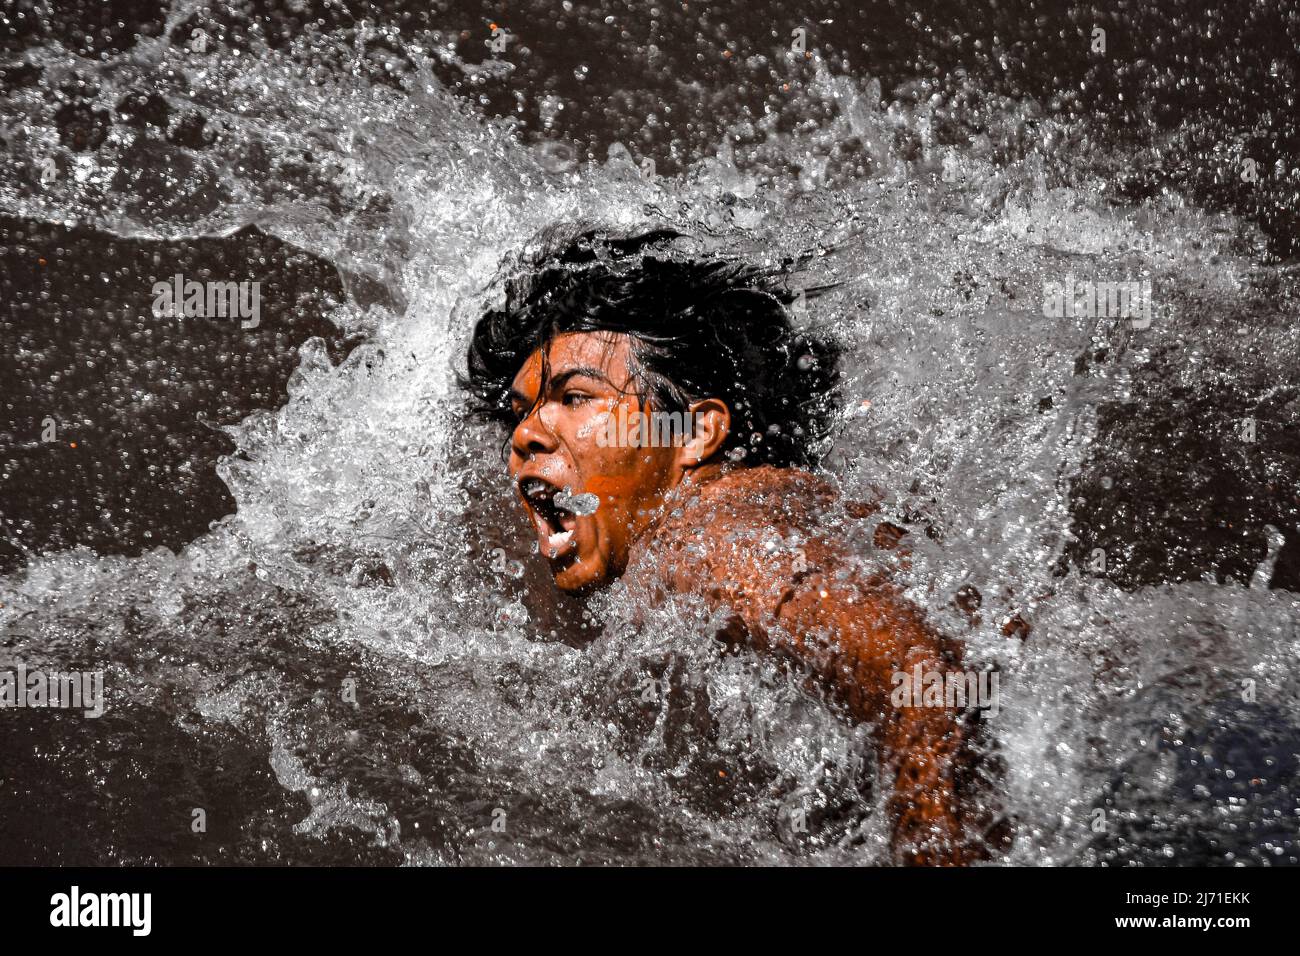 Jeune indien indigène d'une tribu amazonienne au Brésil, nageant pour le concours de jeux autochtones. Rivière Xingu, Amazone, Brésil. 2009. Banque D'Images